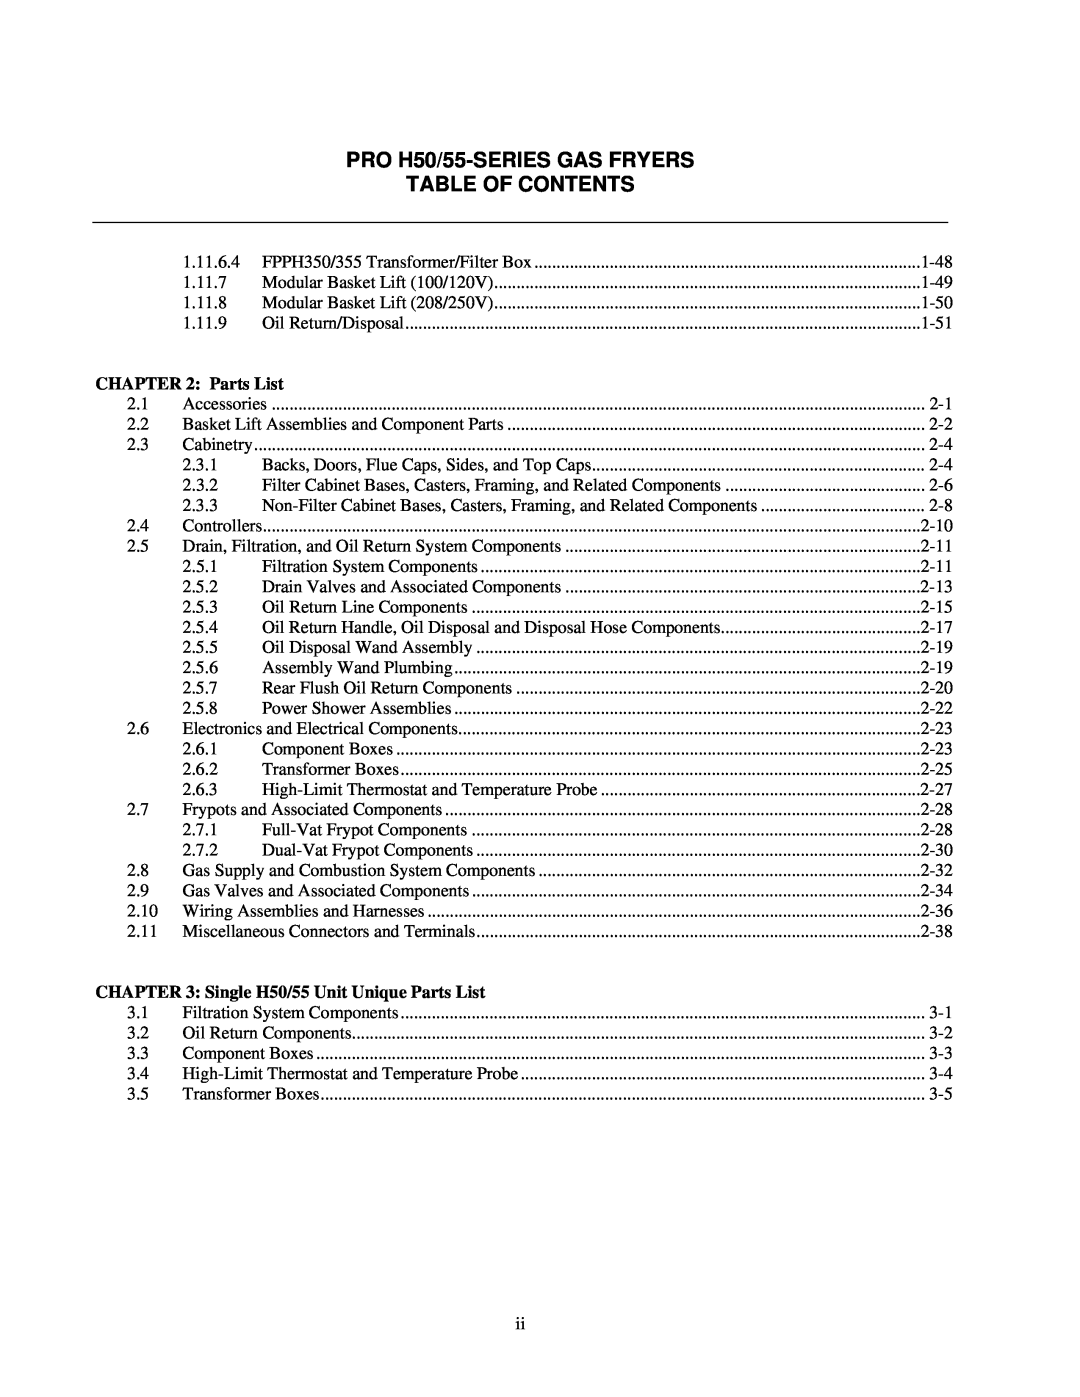 Frymaster manual PRO H50/55-SERIESGAS FRYERS TABLE OF CONTENTS, Single H50/55 Unit Unique Parts List 